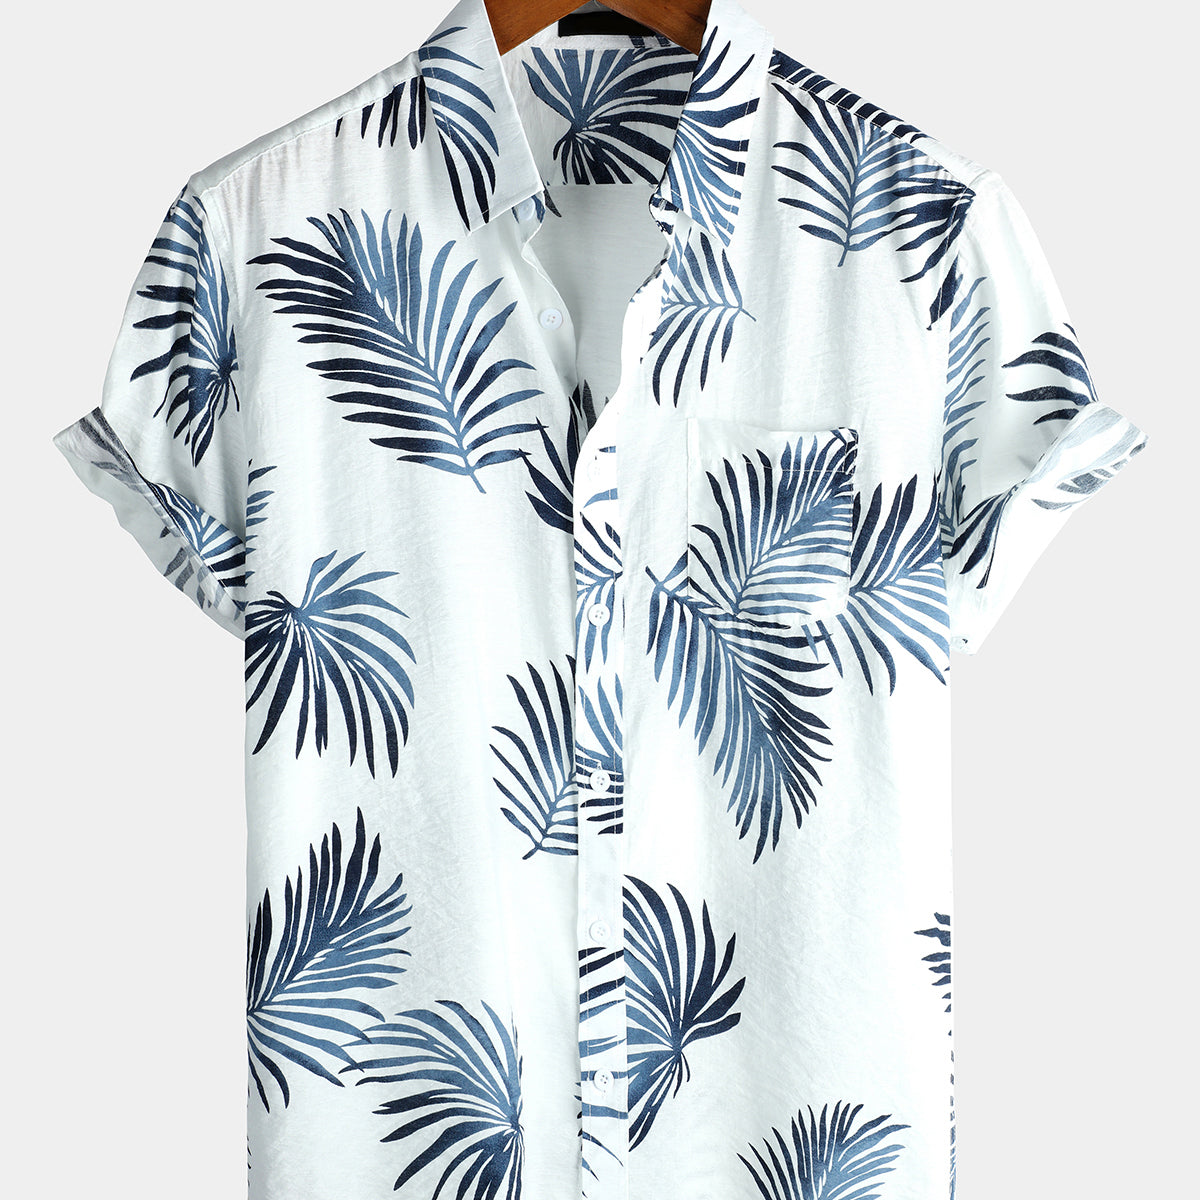 Men's Hawaiian Casual Holiday Cotton Pocket Button Up Summer Beach Short Sleeve Shirt